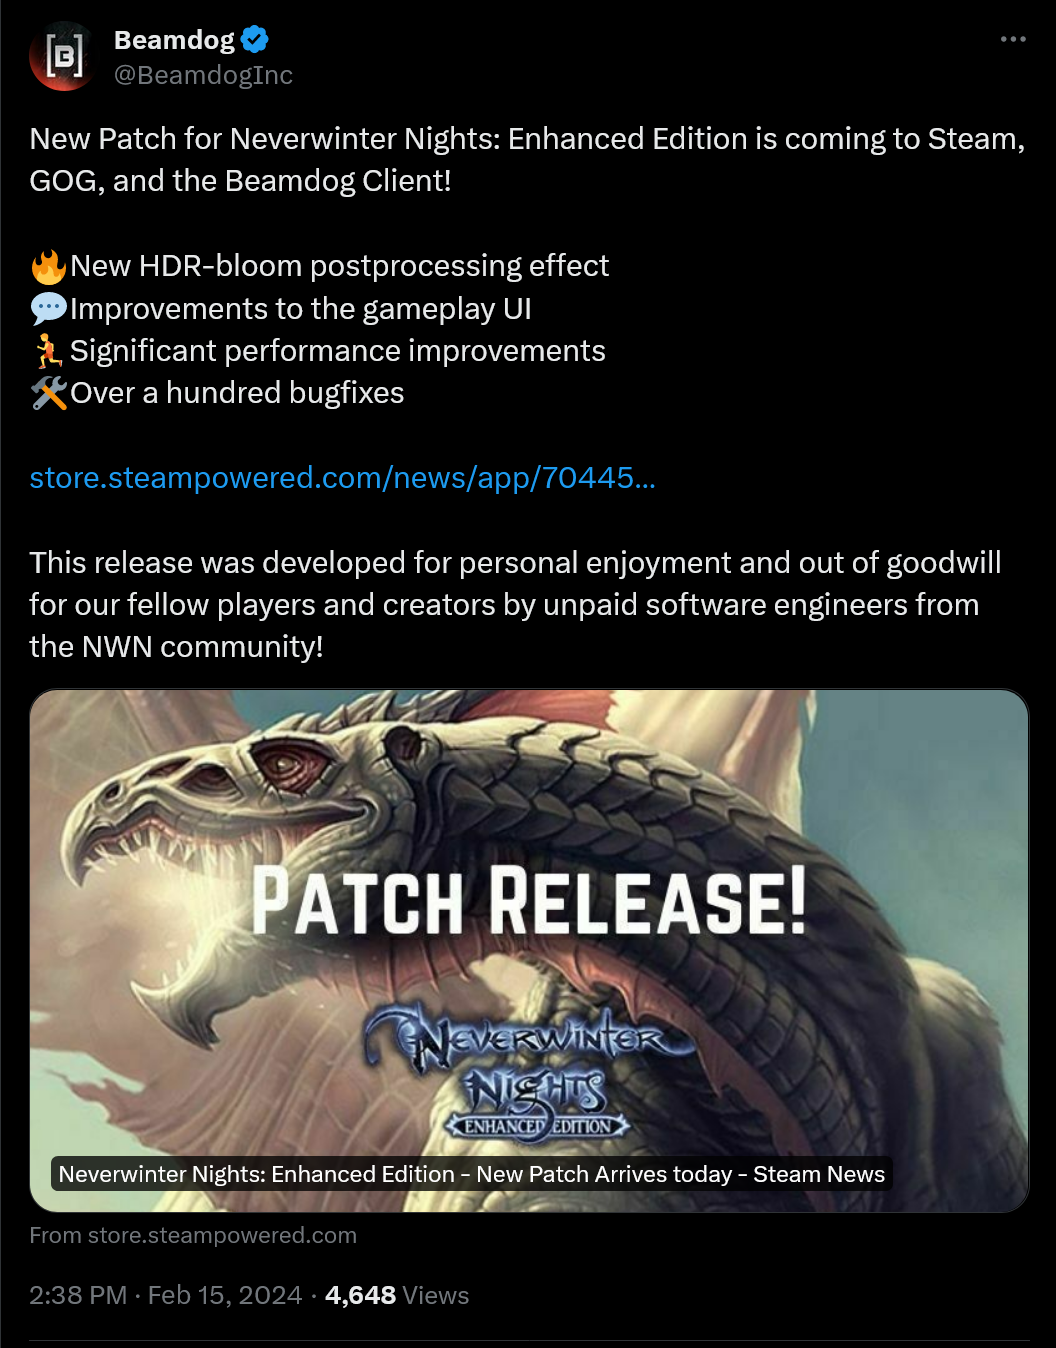 ¡Nuevo parche para Neverwinter Nights: Enhanced Edition llegará a Steam, GOG y Beamdog Client!  🔥Nuevo efecto de posprocesamiento HDR-bloom 💬Mejoras en la interfaz de usuario del juego 🏃Mejoras significativas en el rendimiento 🛠️Más de cien correcciones de errores https://store.steampowered.com/news/app/704450/view/7597079377547967509